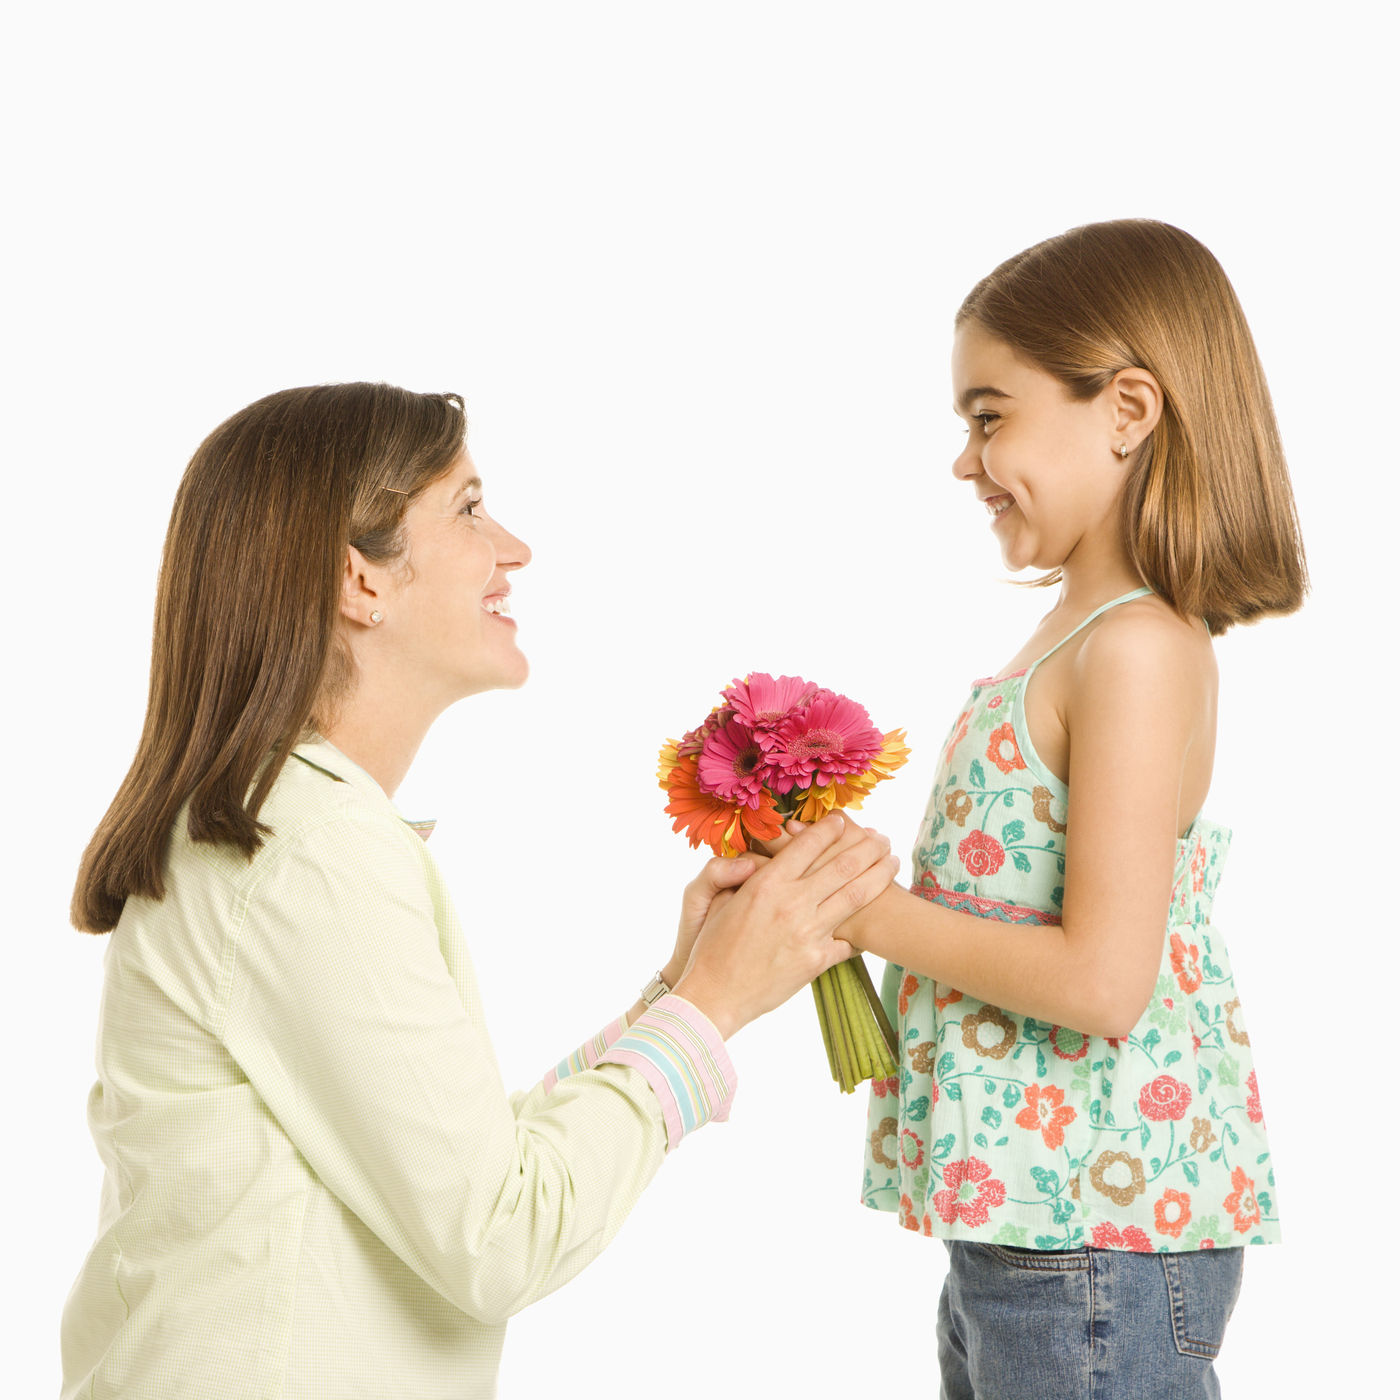 Мама сама взяла. Мальчик дарит девочке цветы. Мальчик дарит цветы маме. Девочка дарит маме цветы. Ребенок дарит цветы маме.